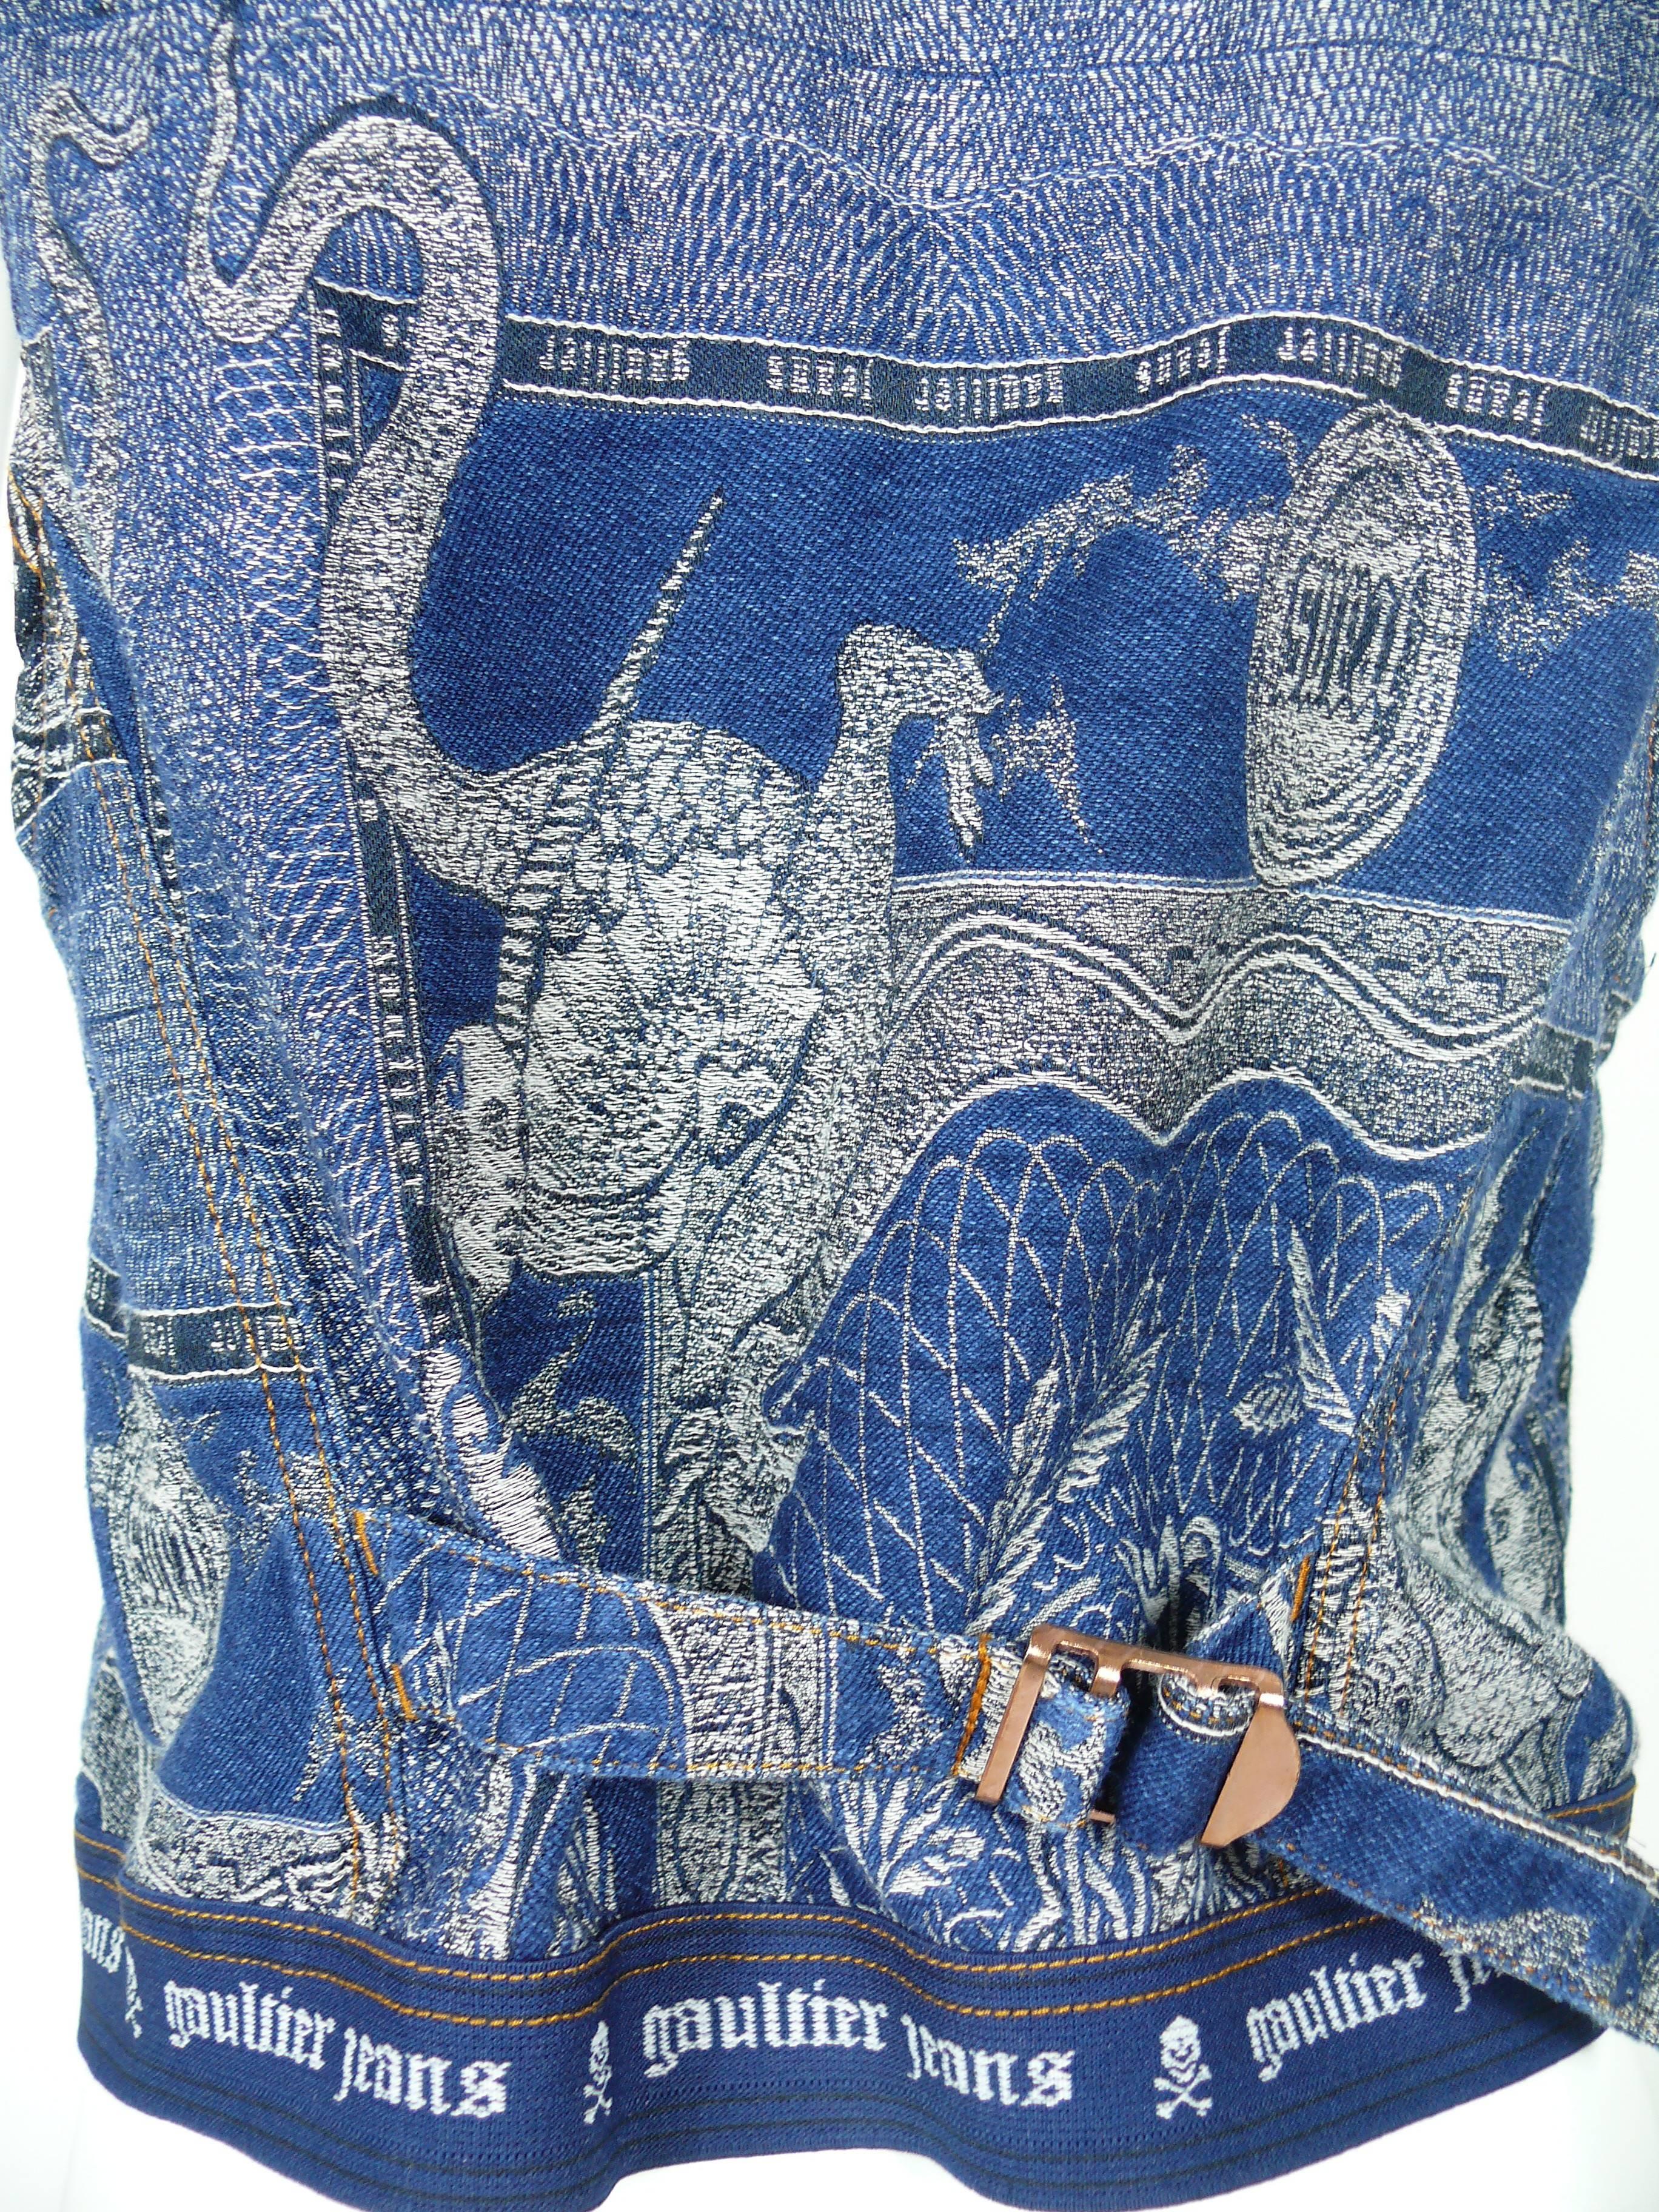 Women's or Men's Jean Paul Gaultier Vintage Dragons Jacquard Denim Vest